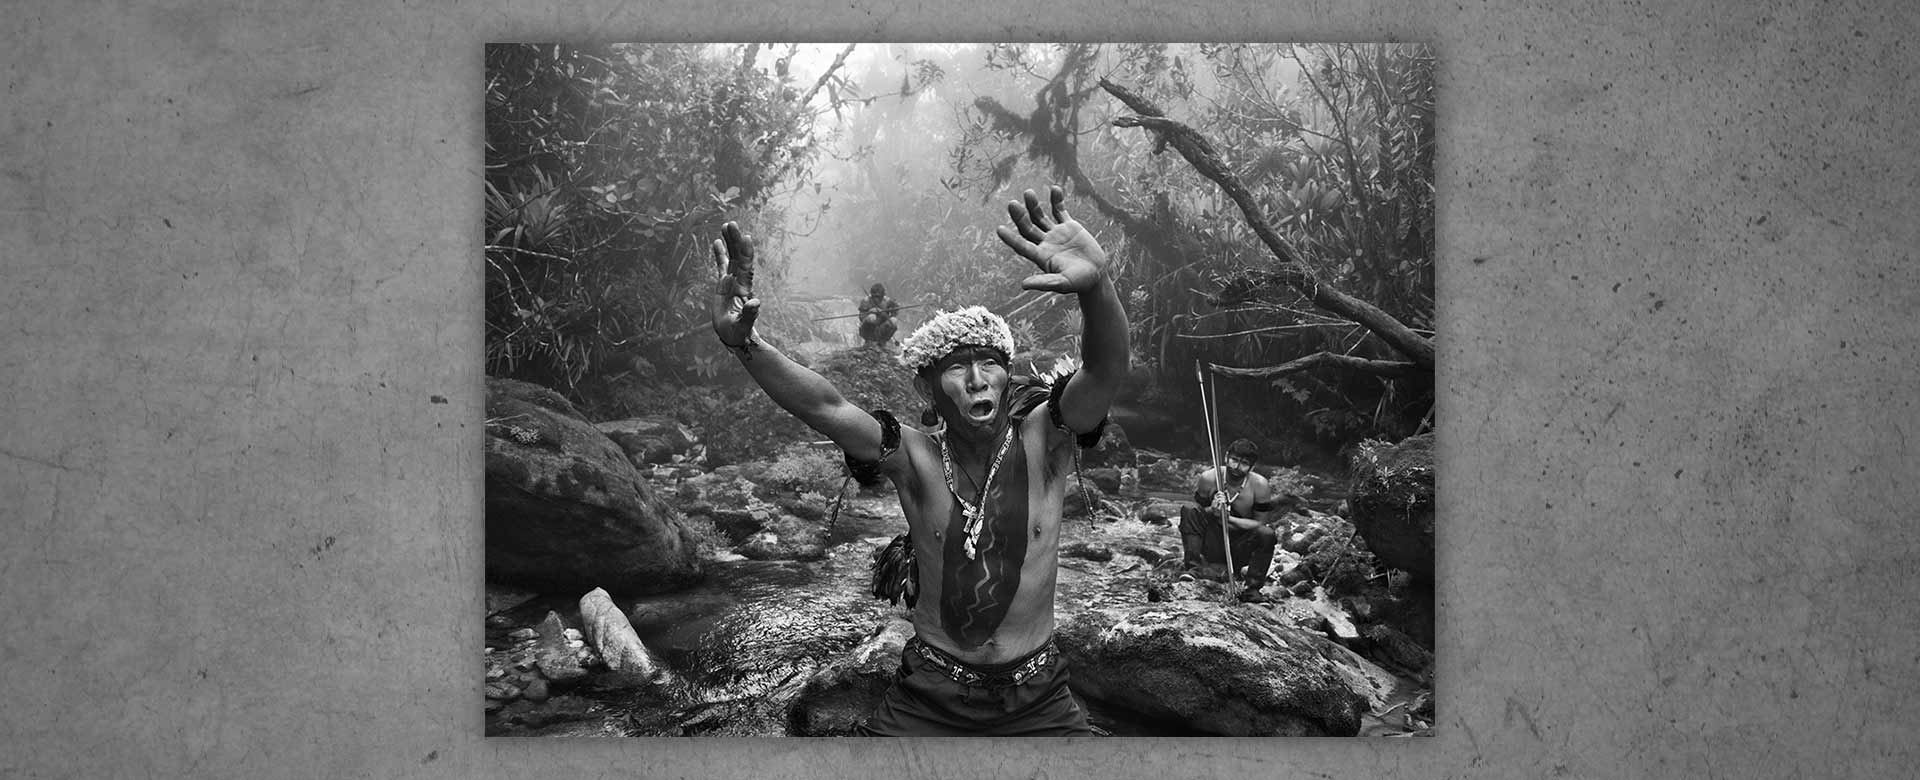 Lo sciamano Yanomami dialoga con gli spiriti prima della salita al monte Pico da Neblina, Brasile (2014) © Sebastião Salgado/Contrasto